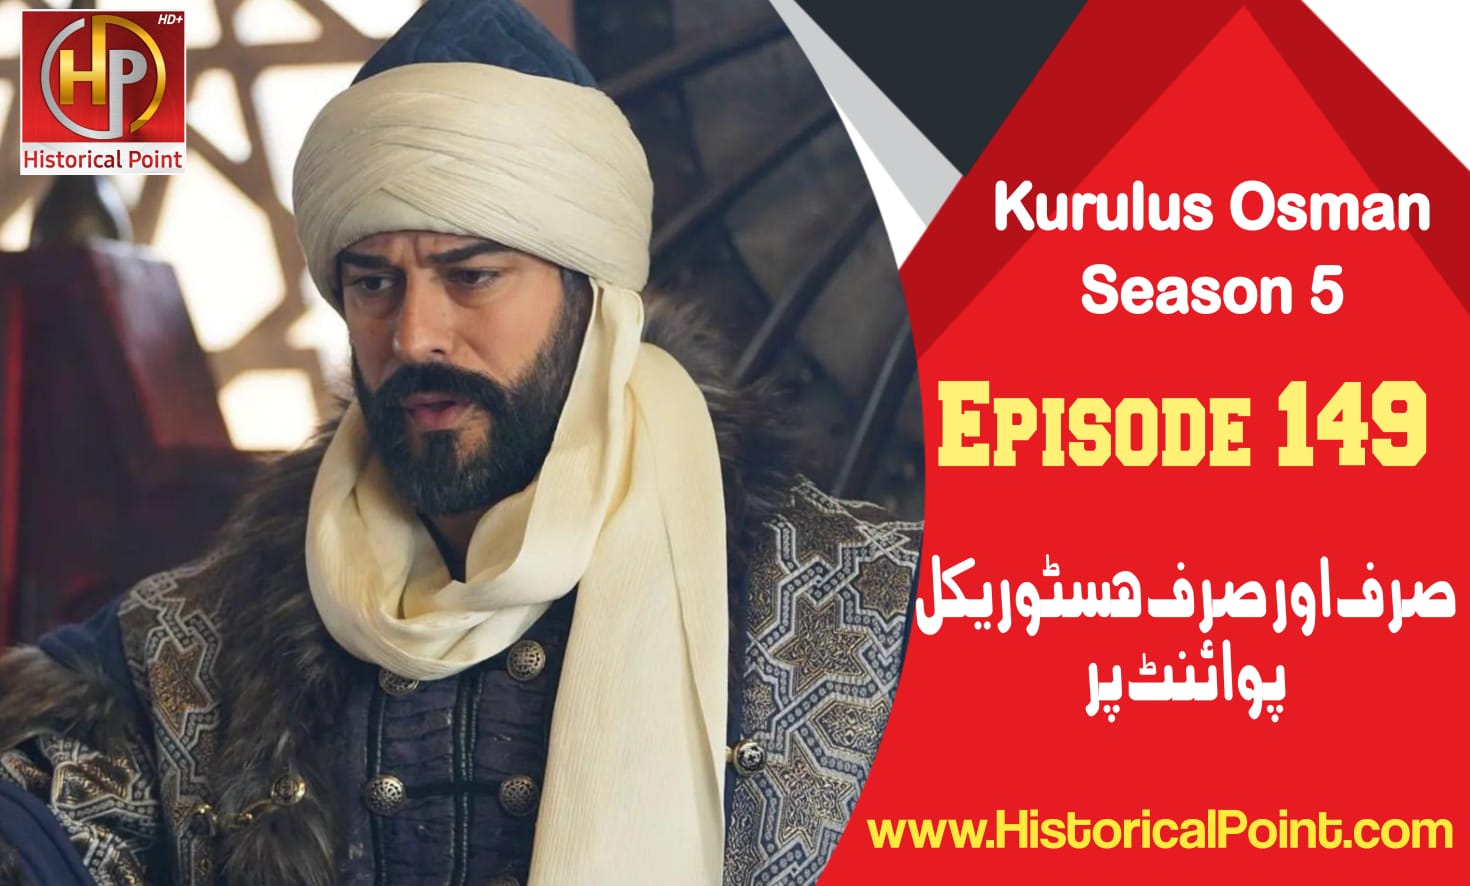 Kurulus Osman Episode 149 in Urdu